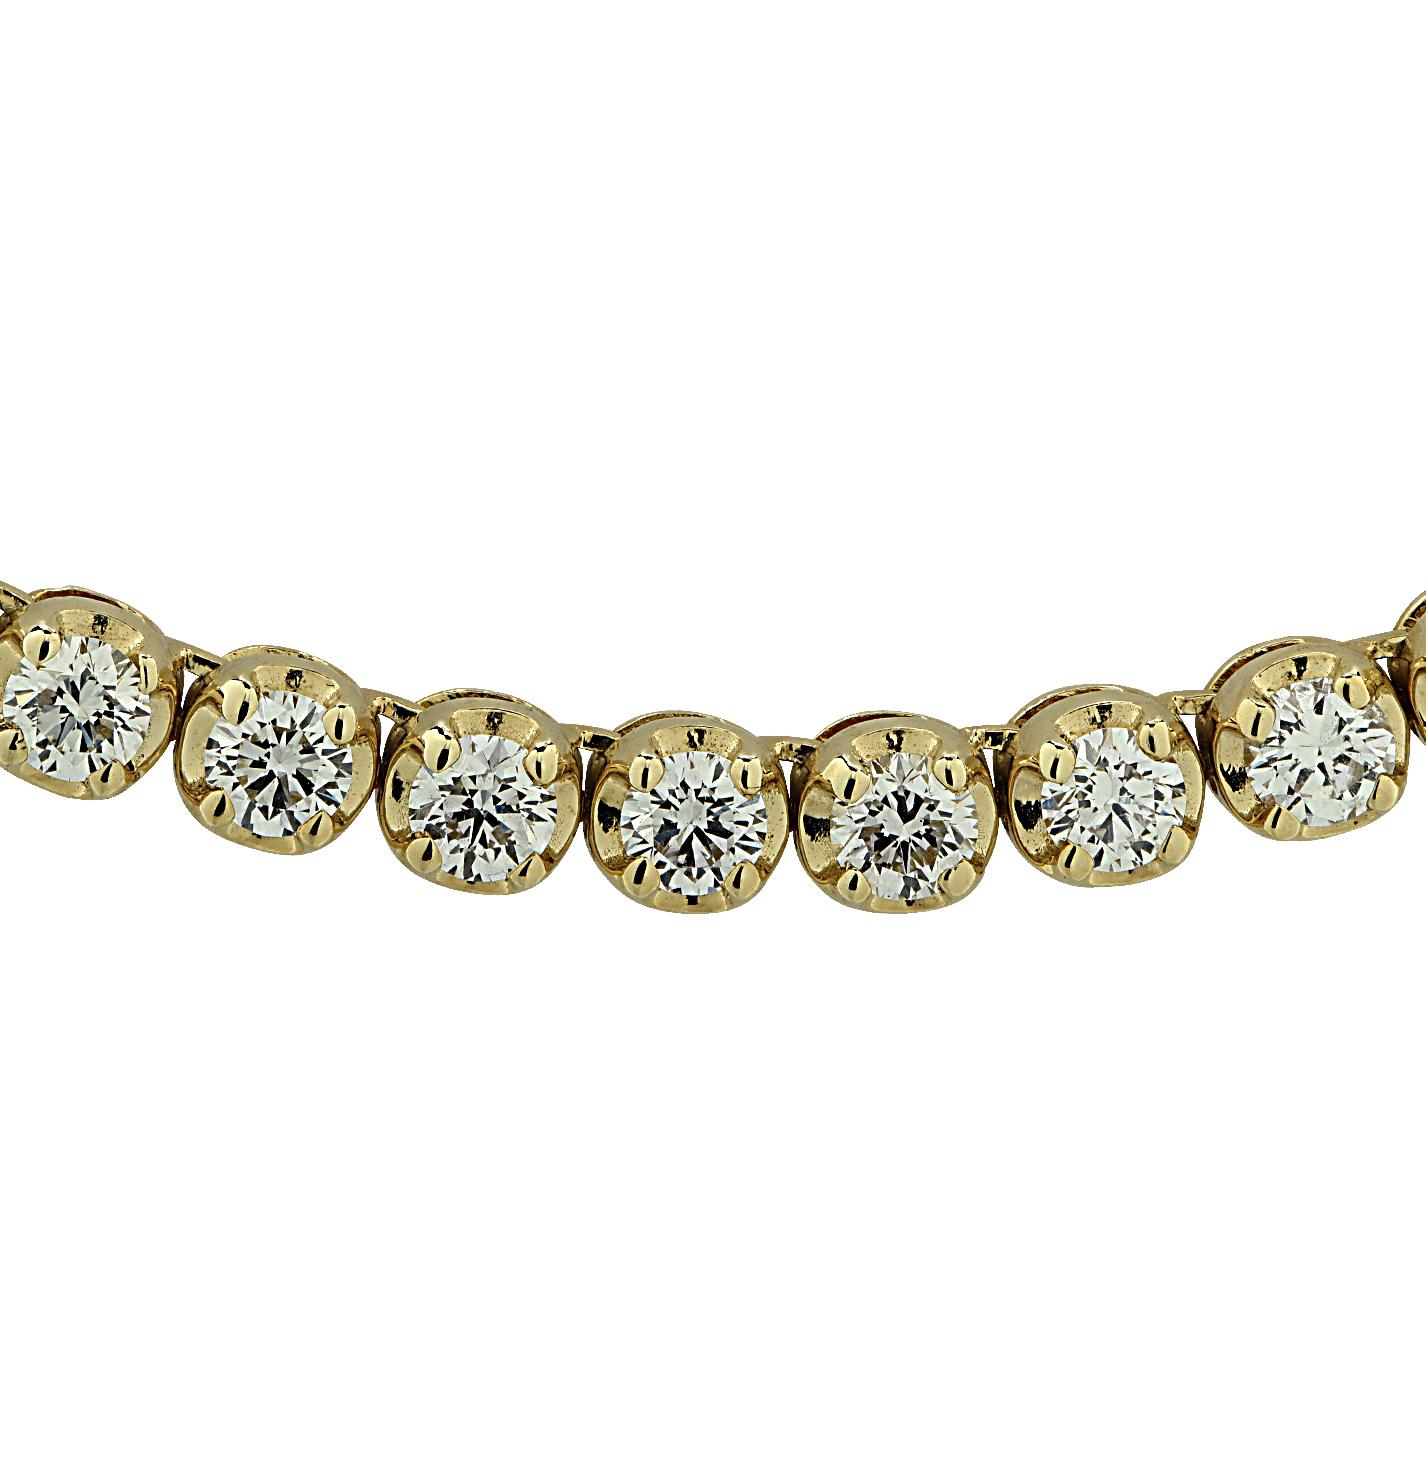 Exquisite Vivid Diamonds Straight Line Diamant-Tennis-Halskette aus Gelbgold mit 93 runden Diamanten im Brillantschliff von insgesamt 11,17 Karat, Farbe E-F, Reinheit VS. Jeder Diamant wurde sorgfältig ausgewählt, perfekt aufeinander abgestimmt und